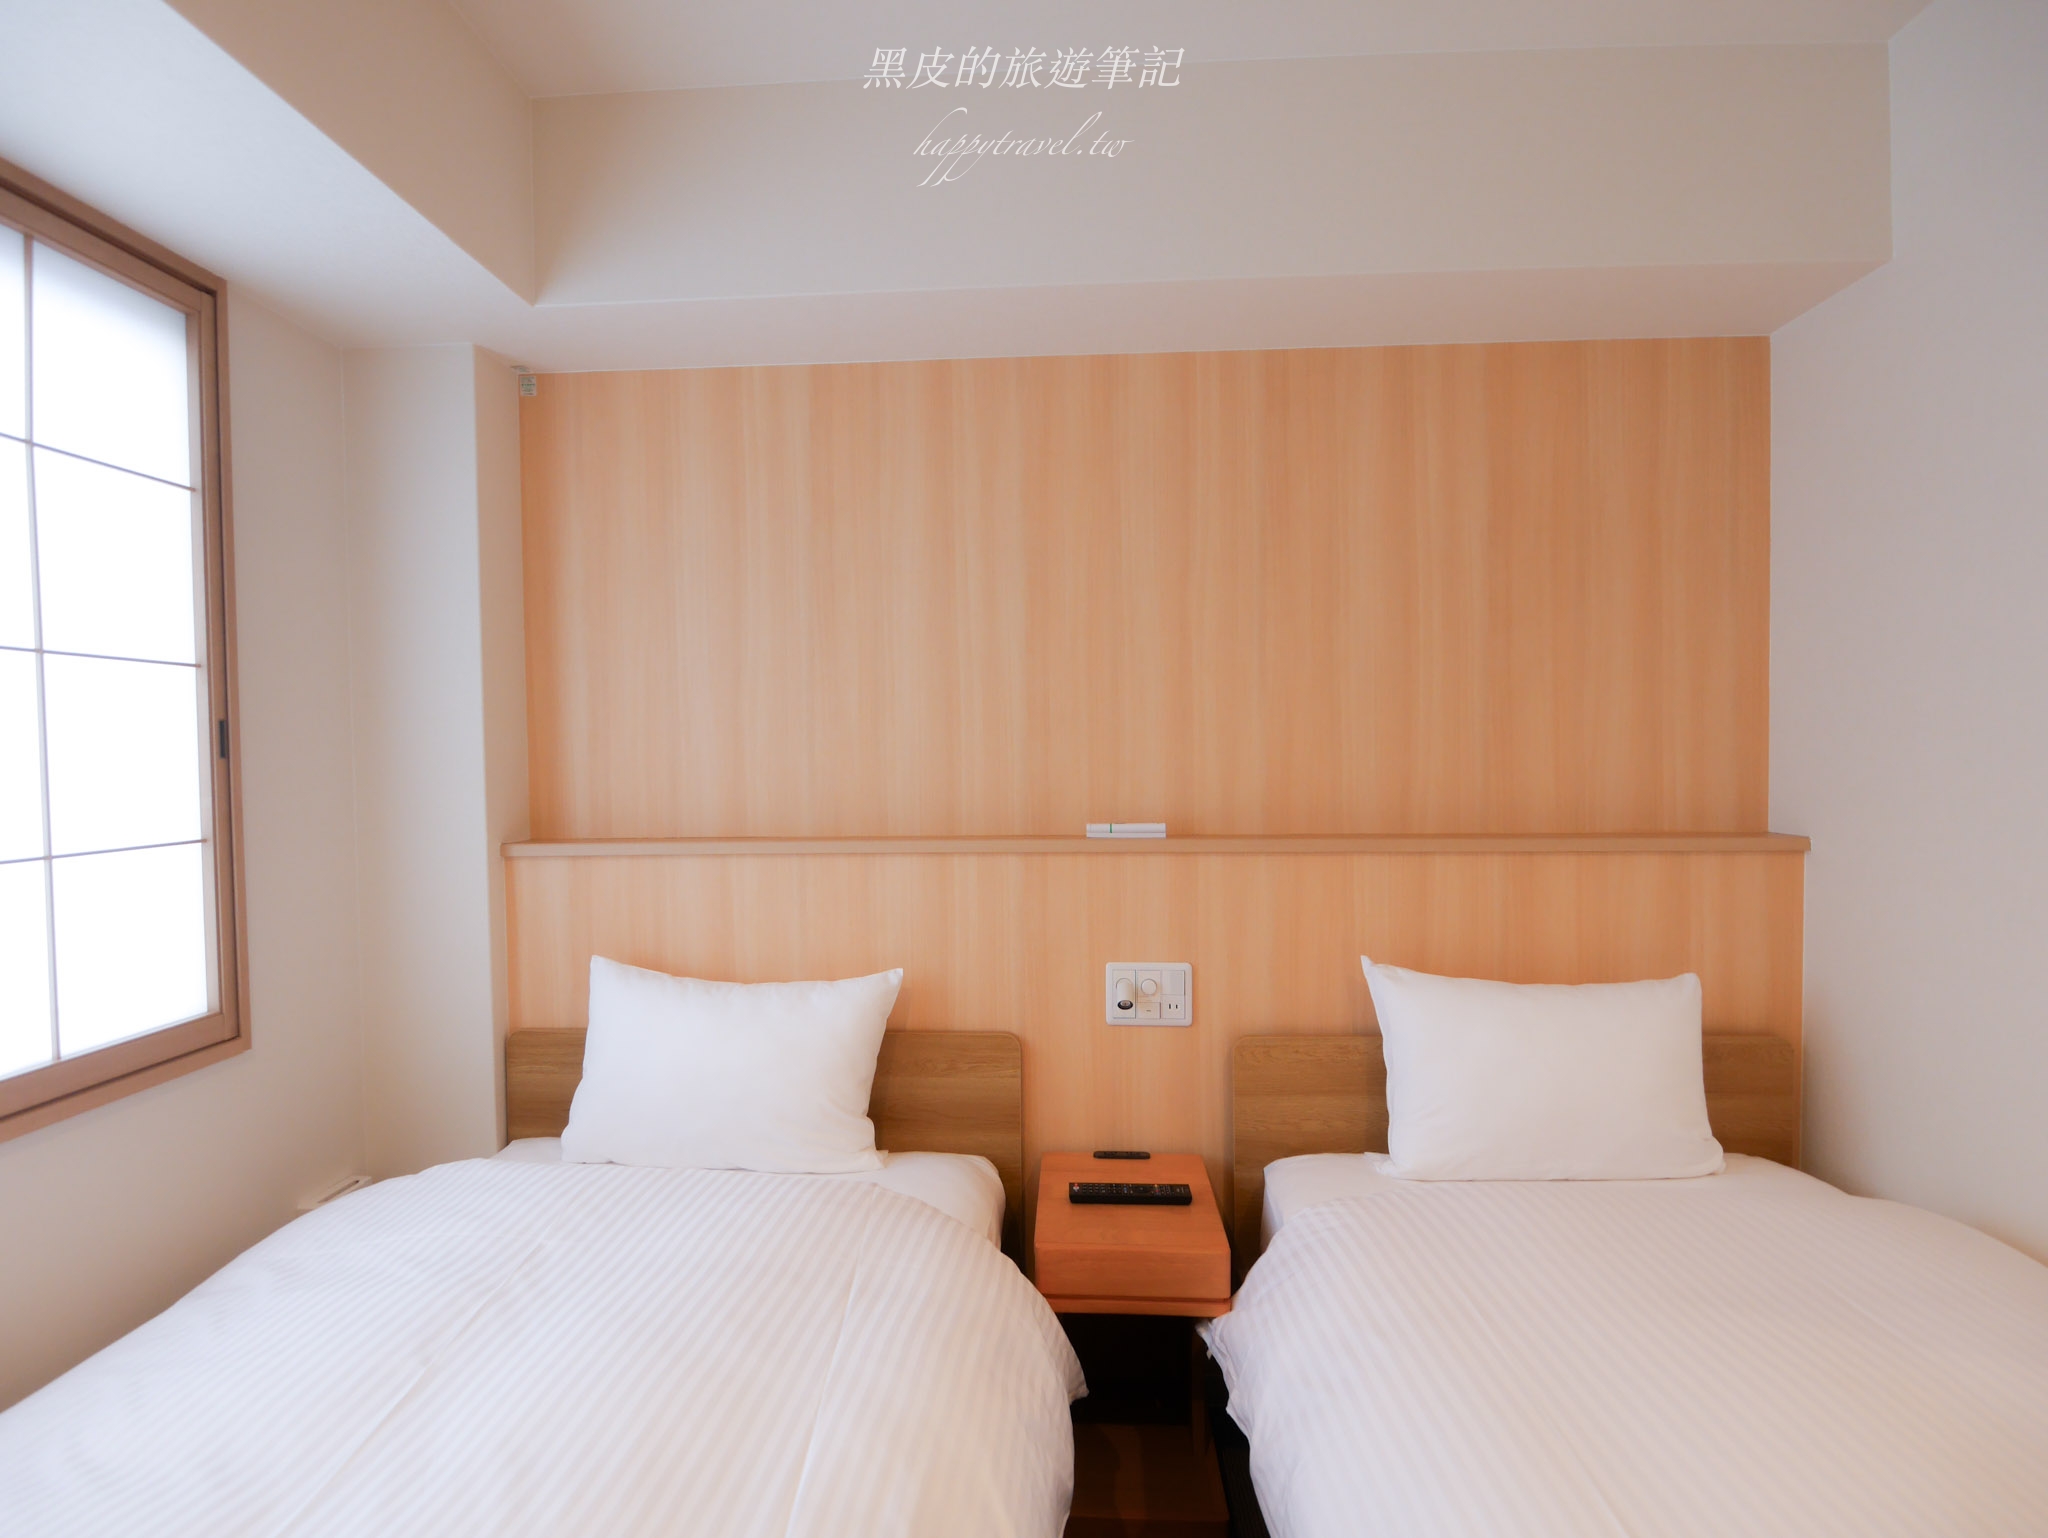 日本京都住宿。京都五條藤飯店 Fuji Hotel Kyoto Gojo｜日本京都平價住宿，乾淨舒適，離地鐵、公車更是步行一分鐘內即可到達